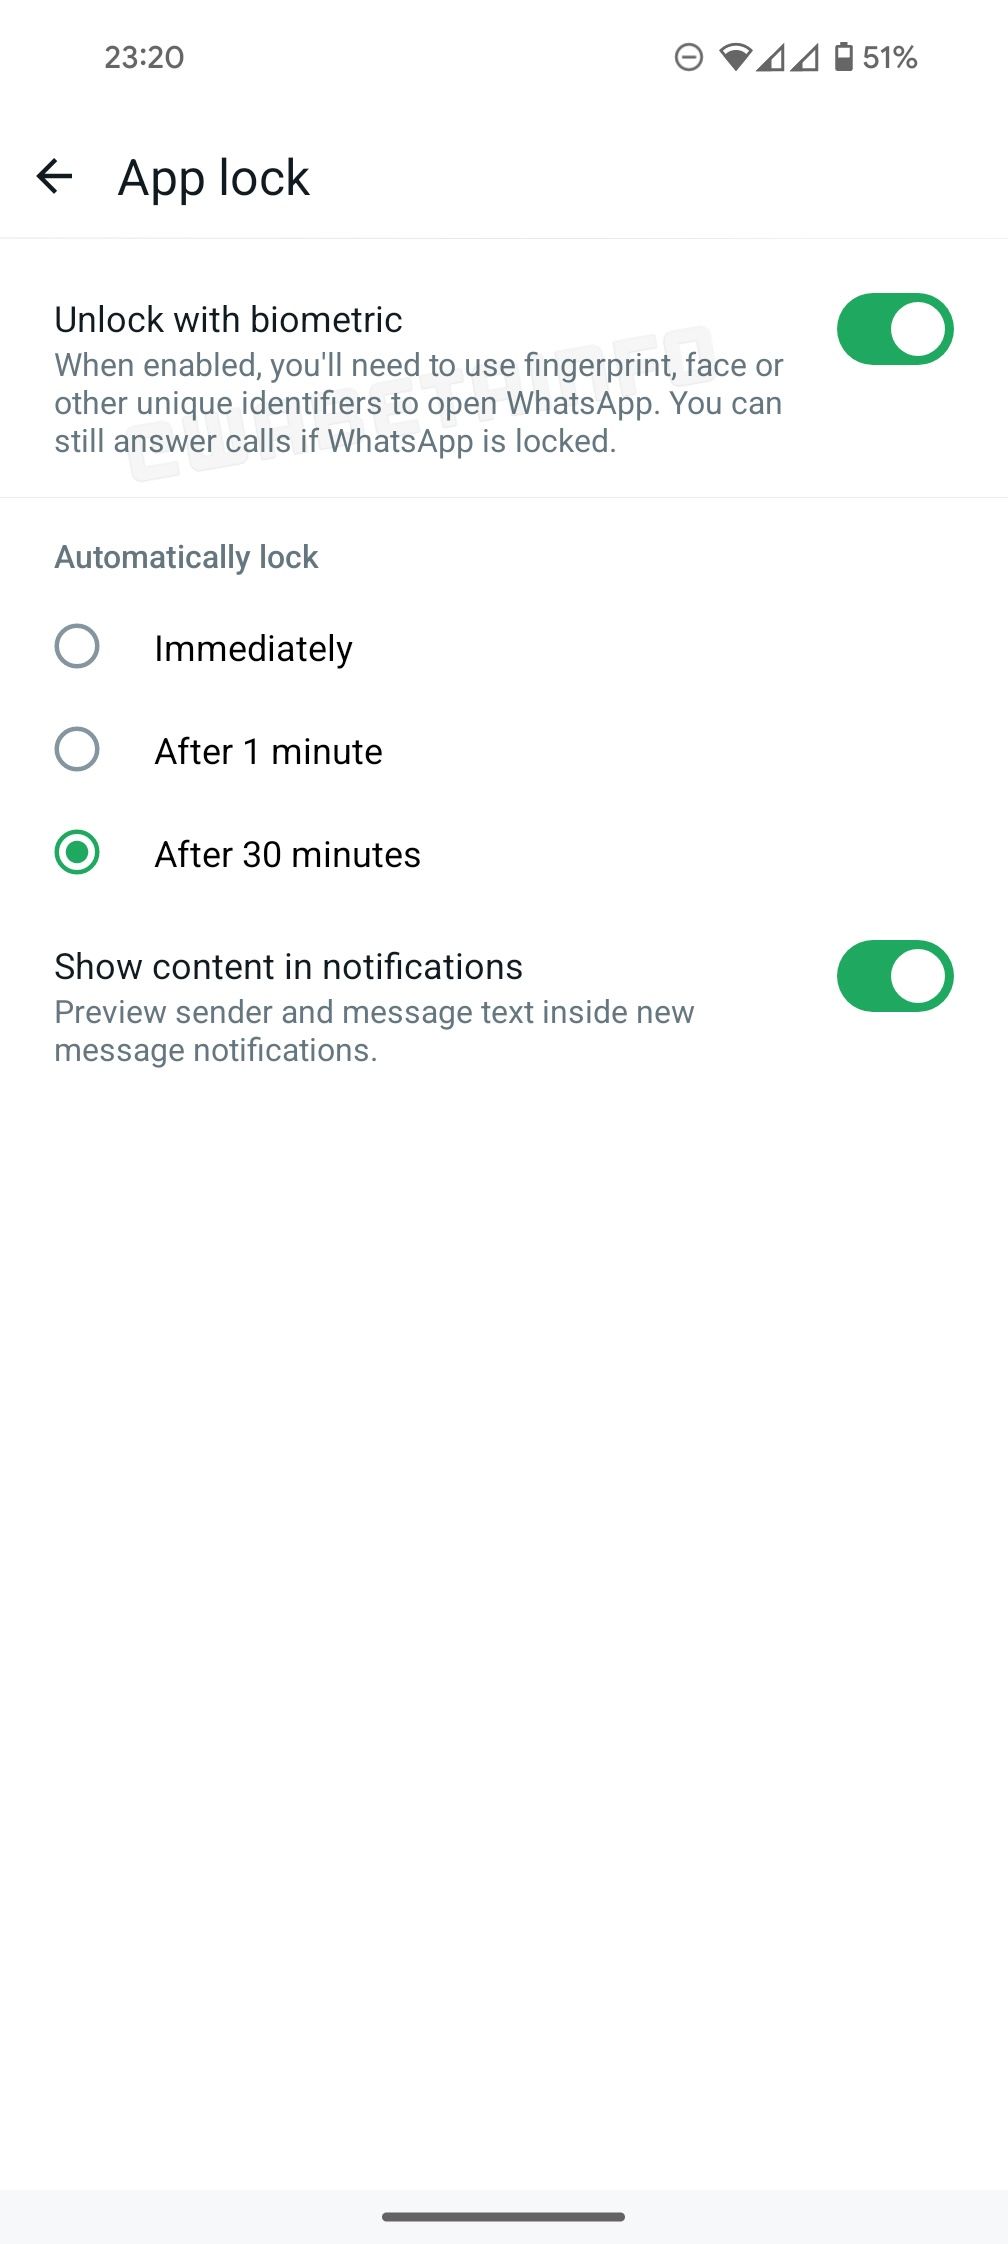 Captura de tela da última versão beta do WhatsApp mostrando opções expandidas para autenticação de bloqueio de aplicativo